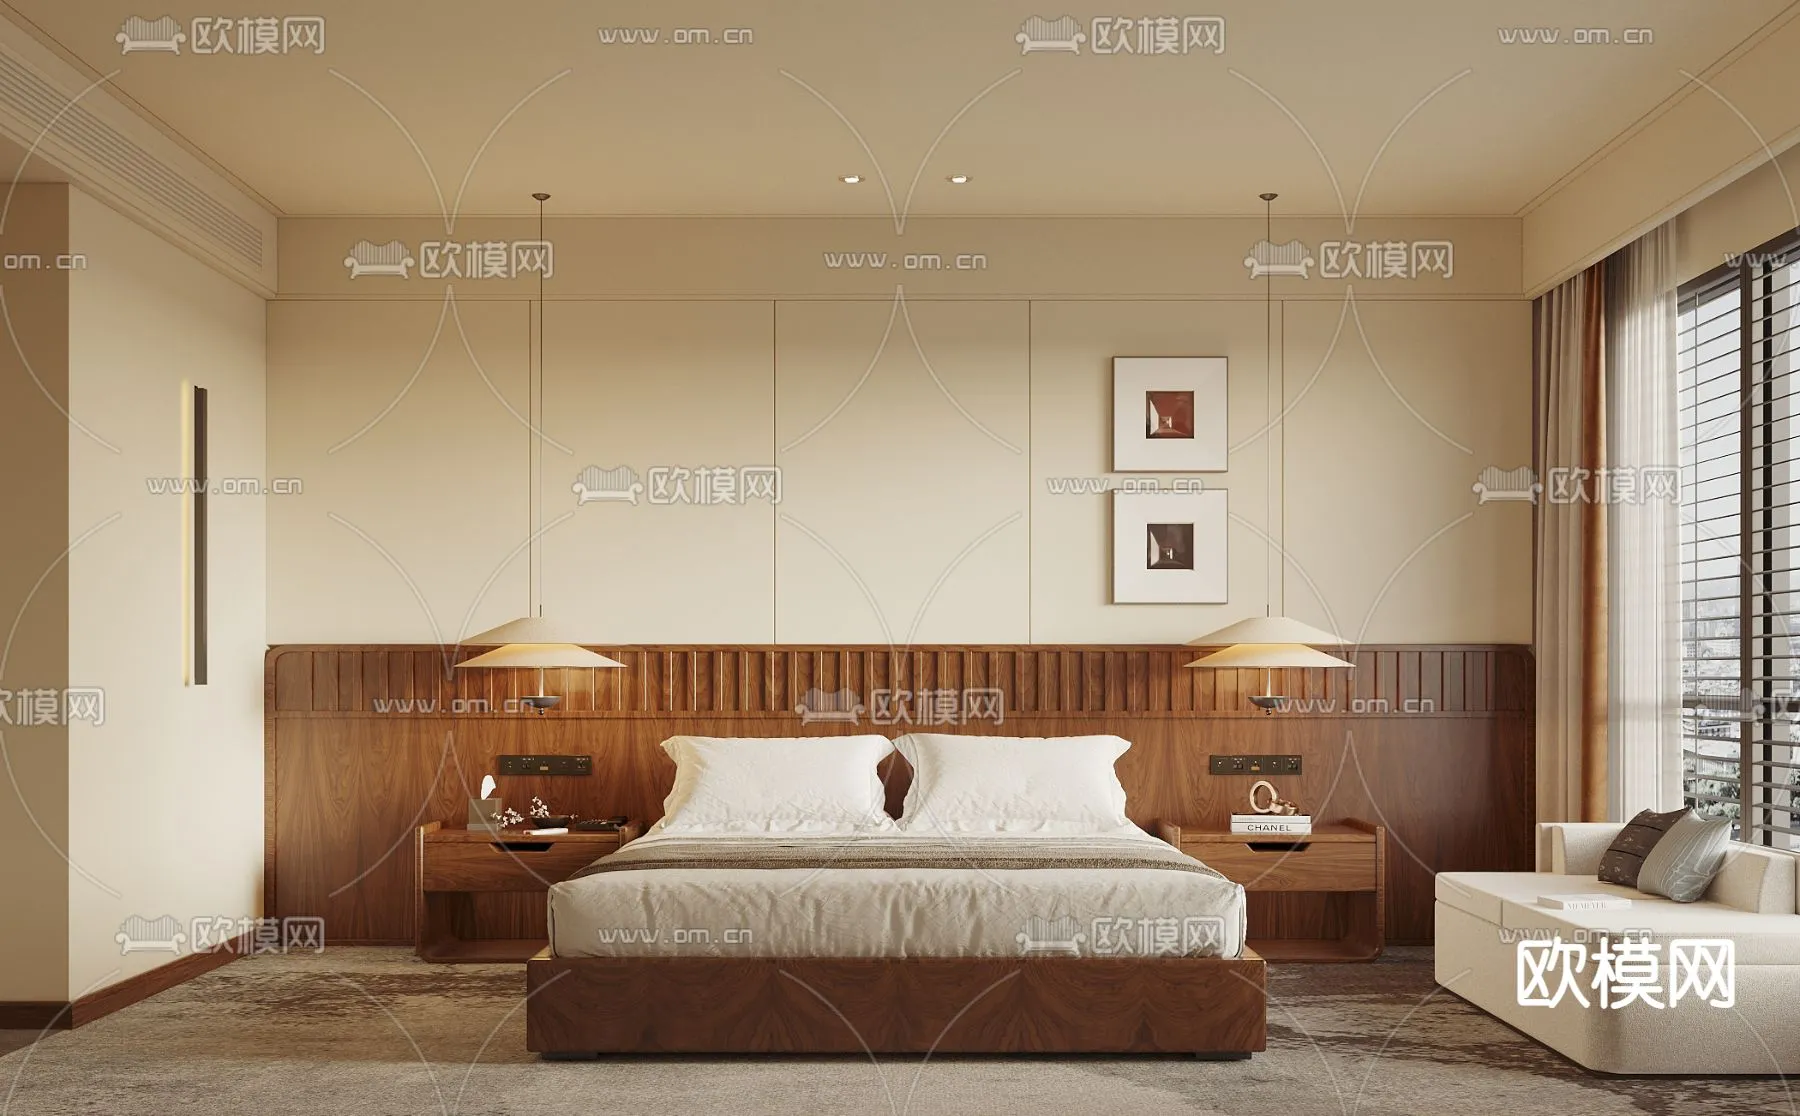 Hotel Room – Bedroom For Hotel 3D Models – 010